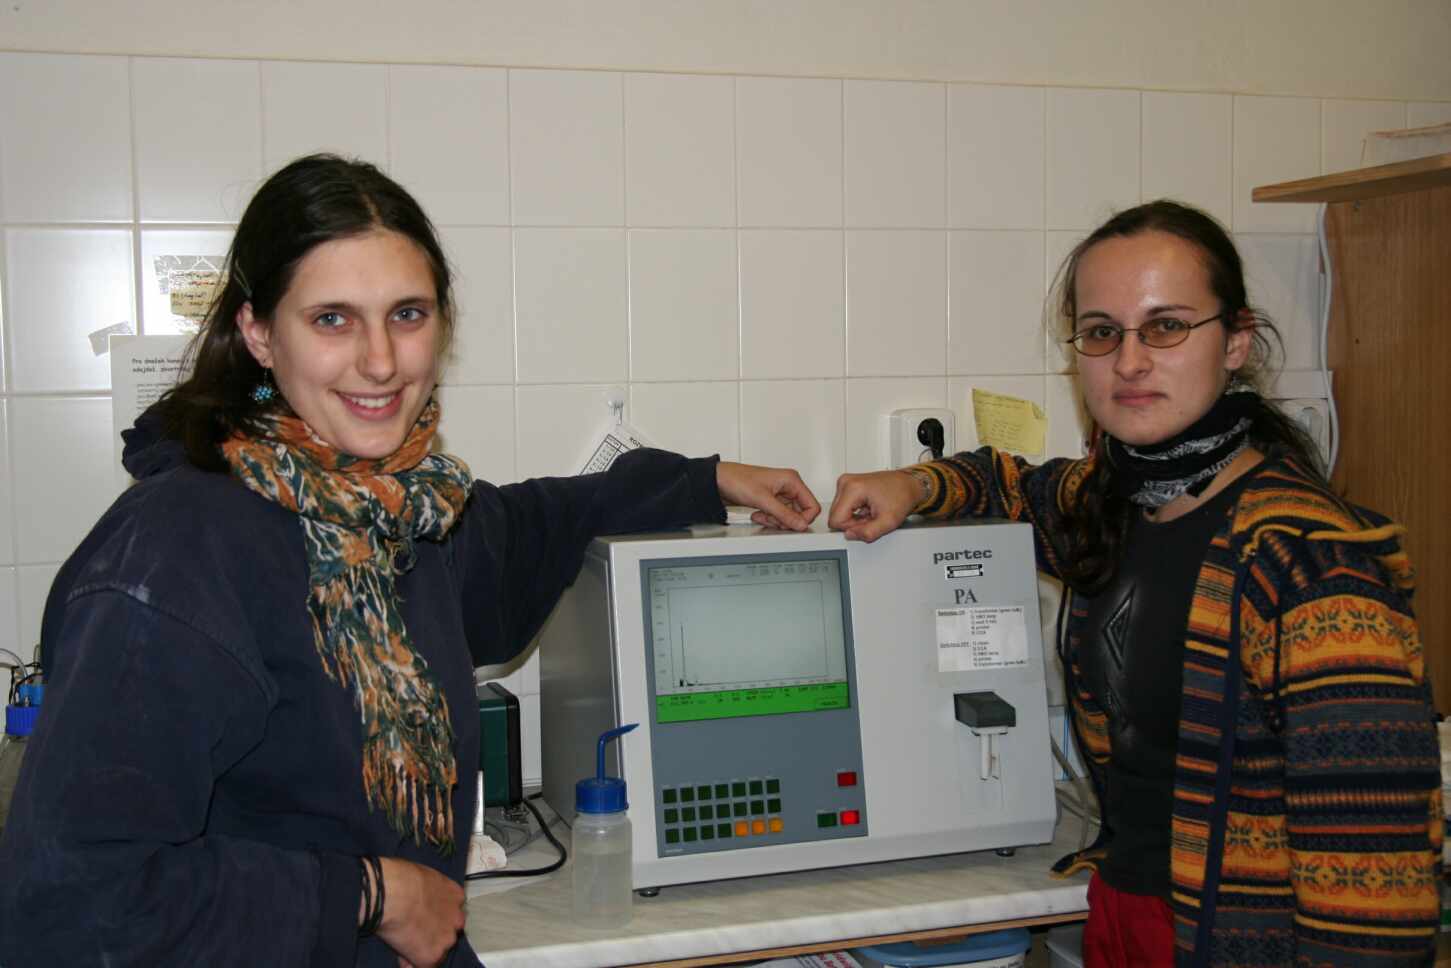 Daniela Bártová, Ivana Hralová and Cytometer PA-1